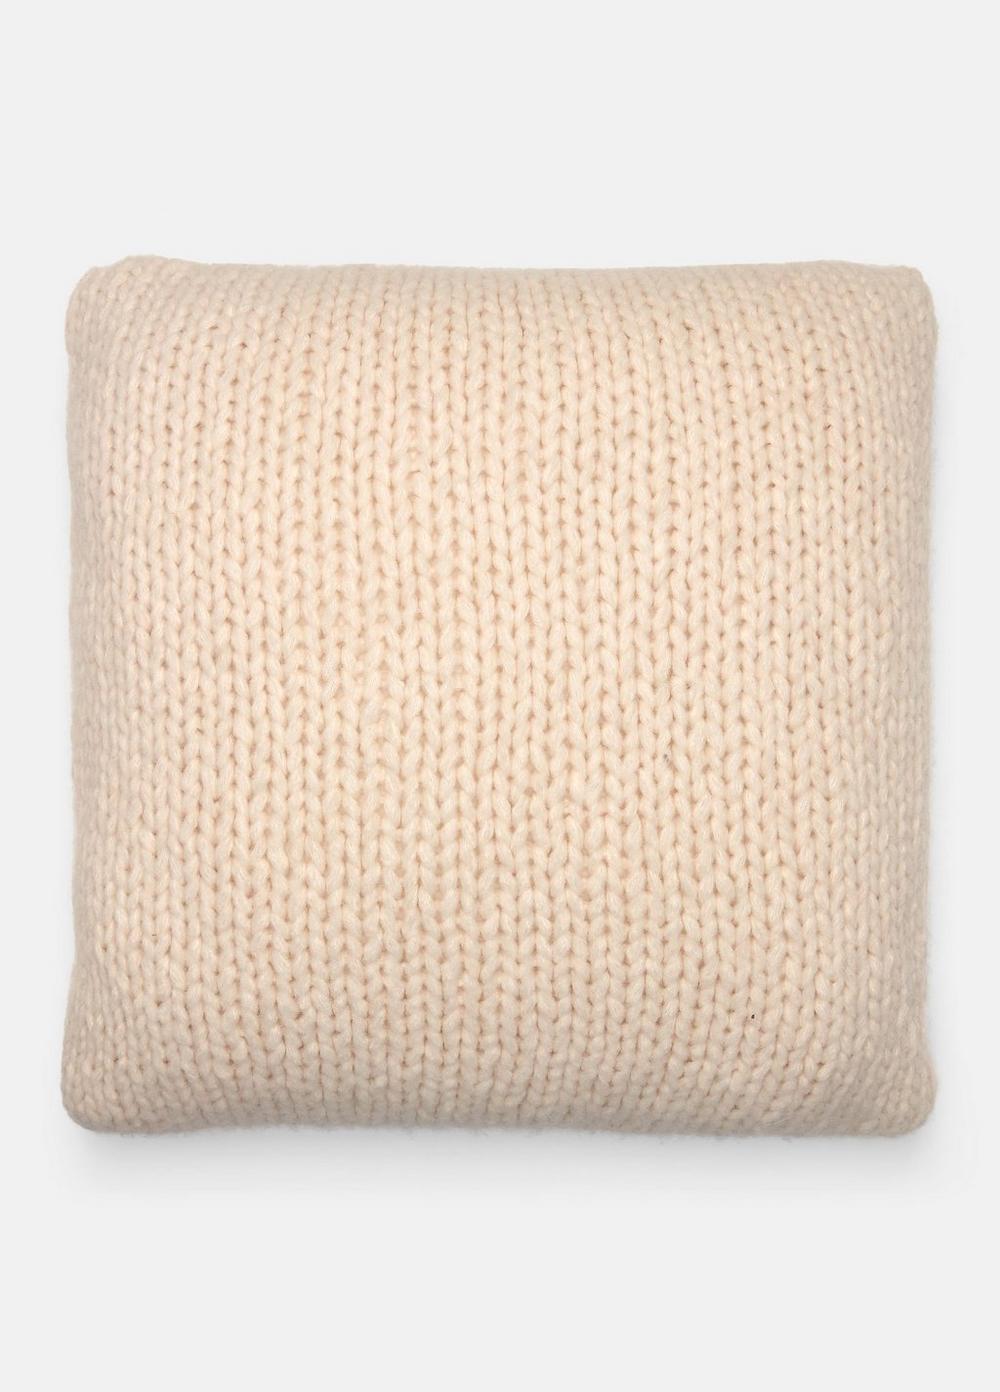 Hand Knit Pillow